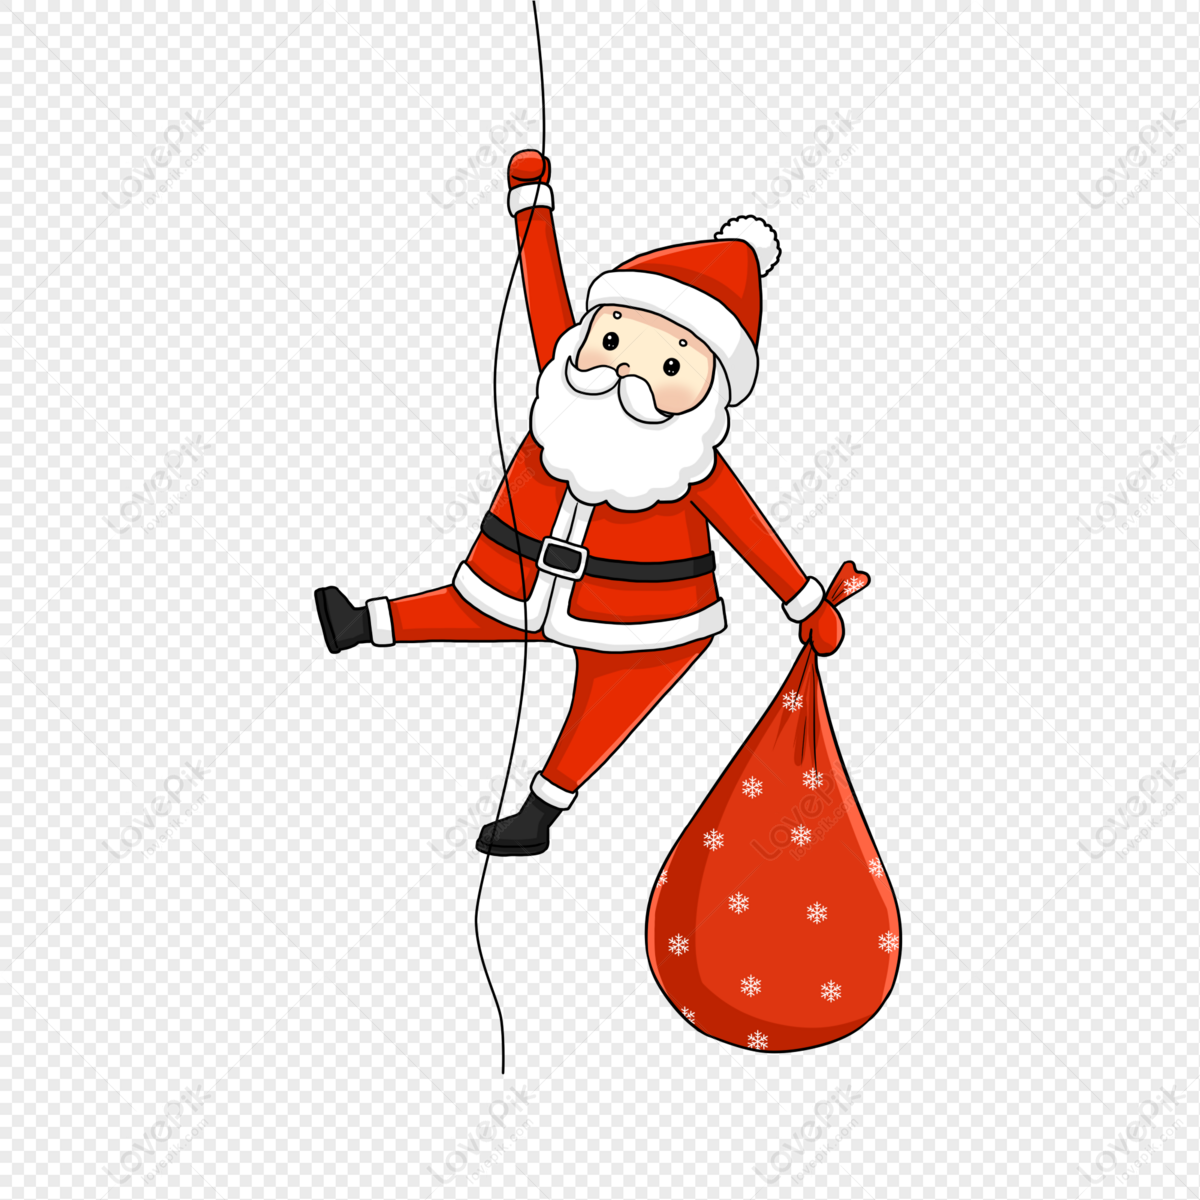 Santa Claus, Christmas, Santa Claus, Give Gifts Free PNG And Clipart ...